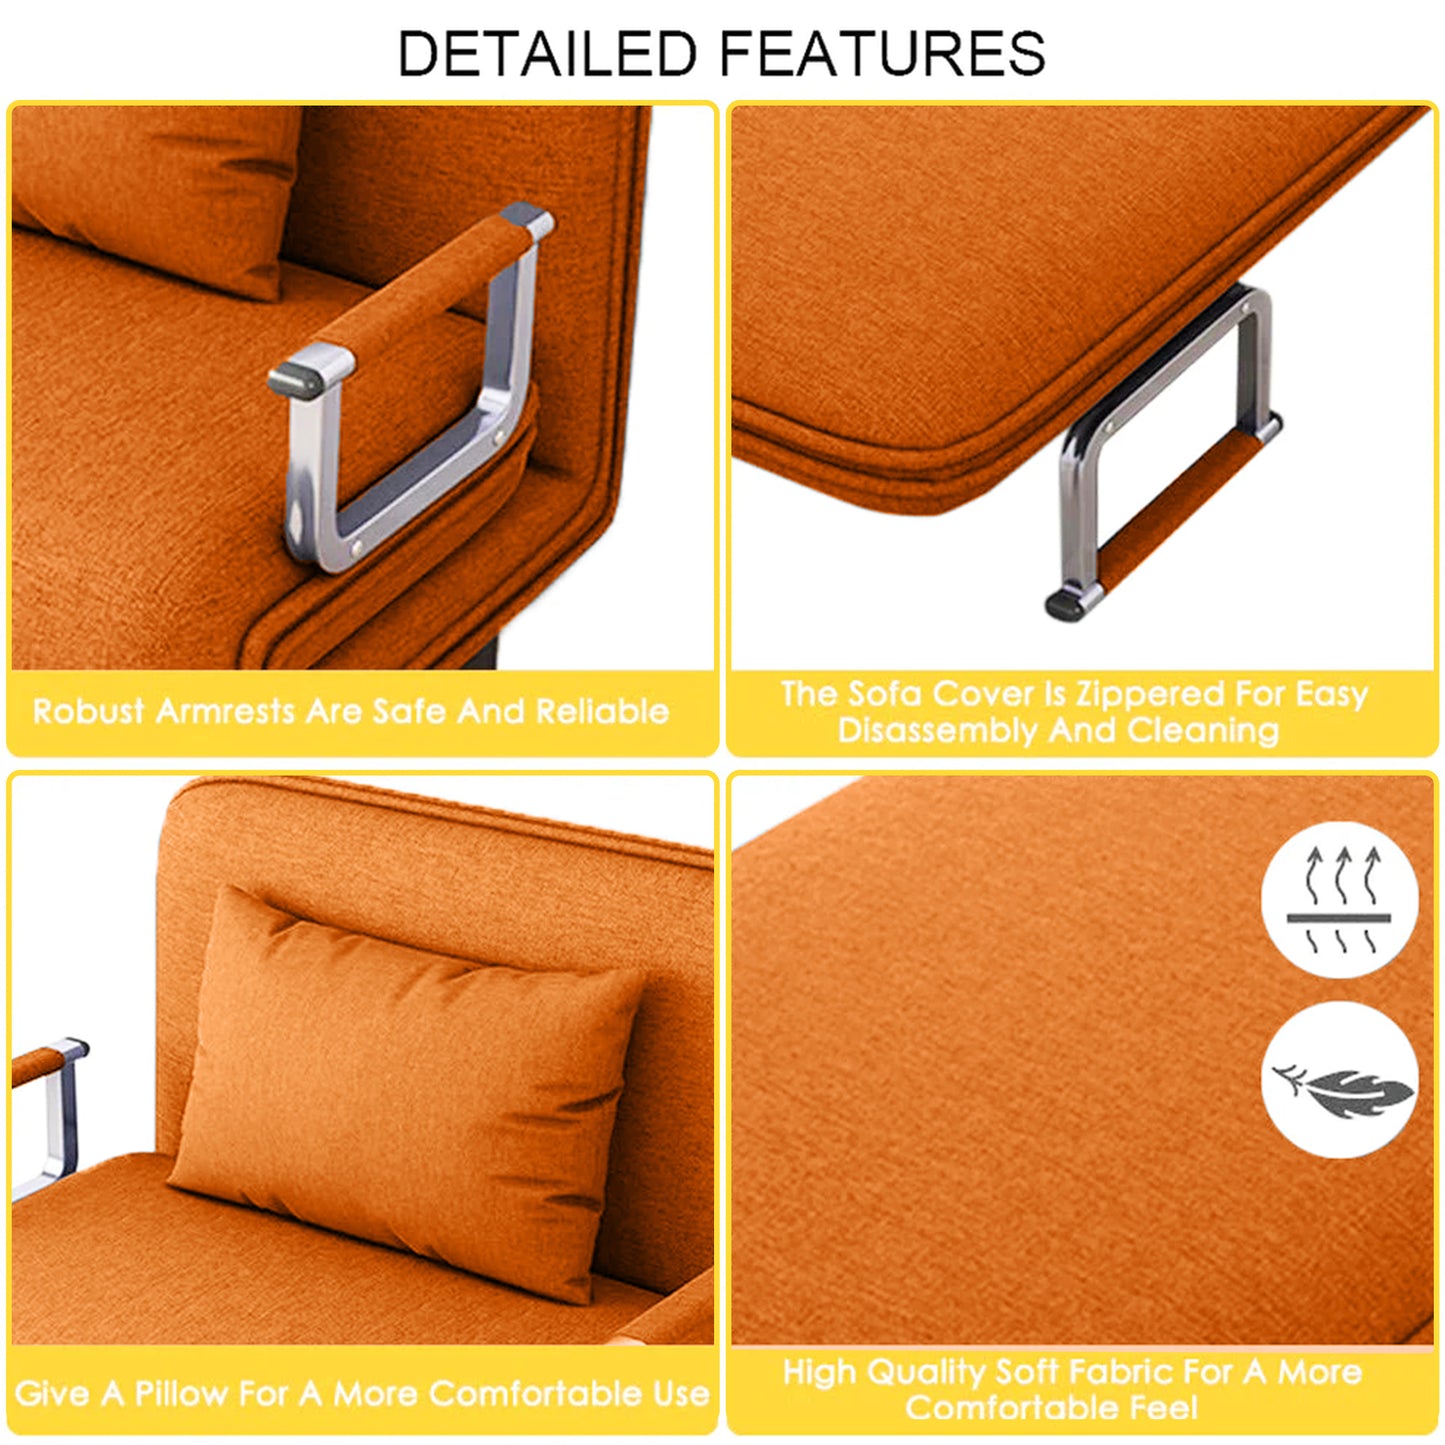 HOCC Convertible Sofa Bed Orange